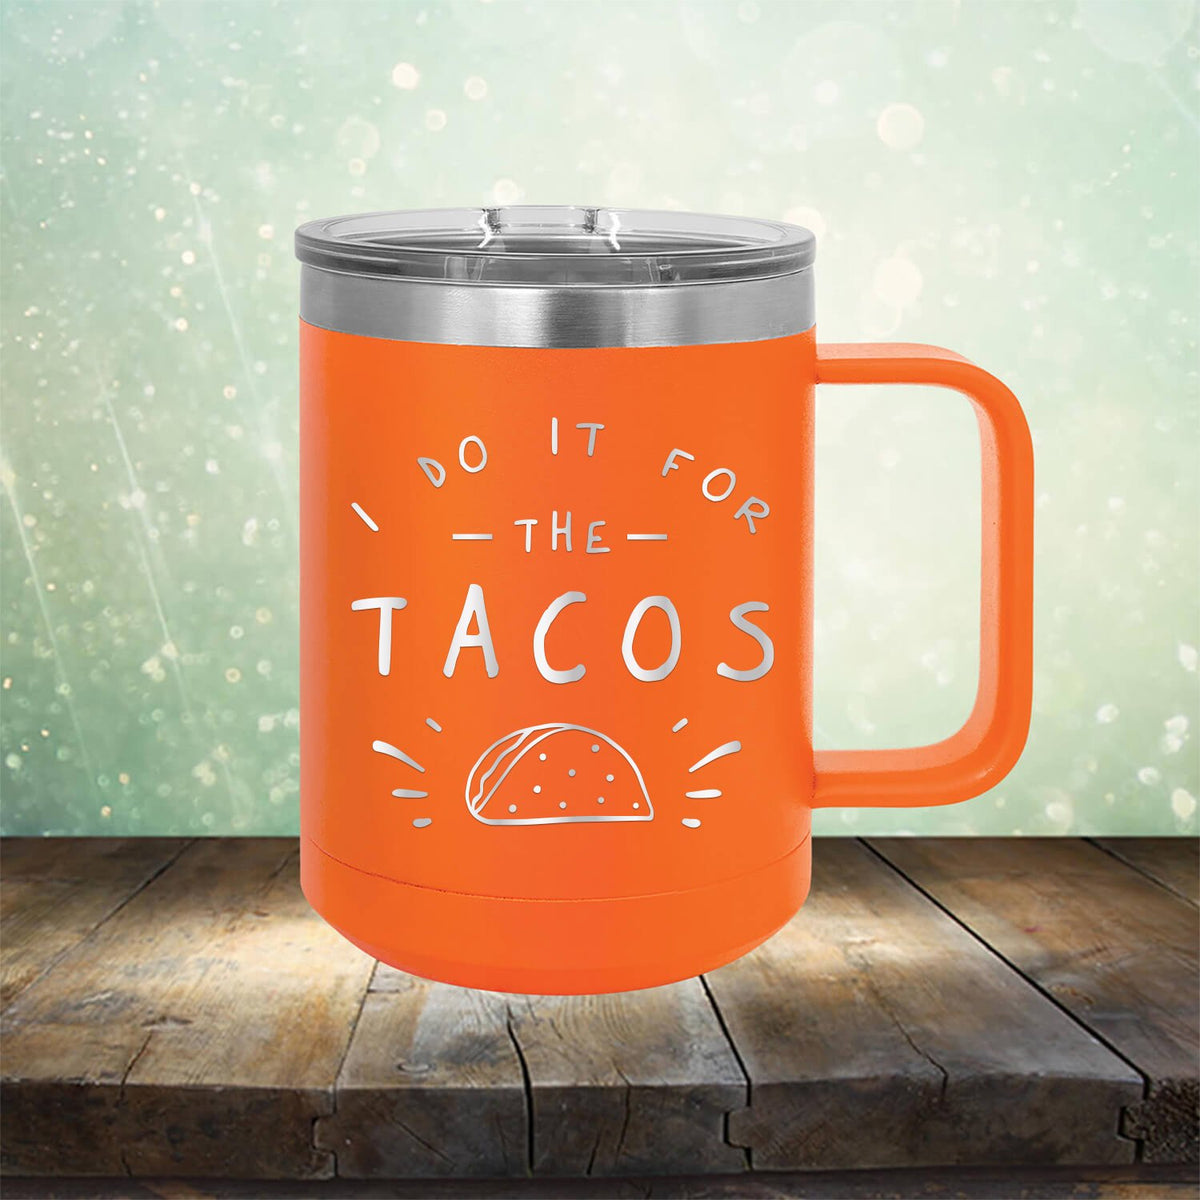 I Do It For The Tacos - Laser Etched Tumbler Mug